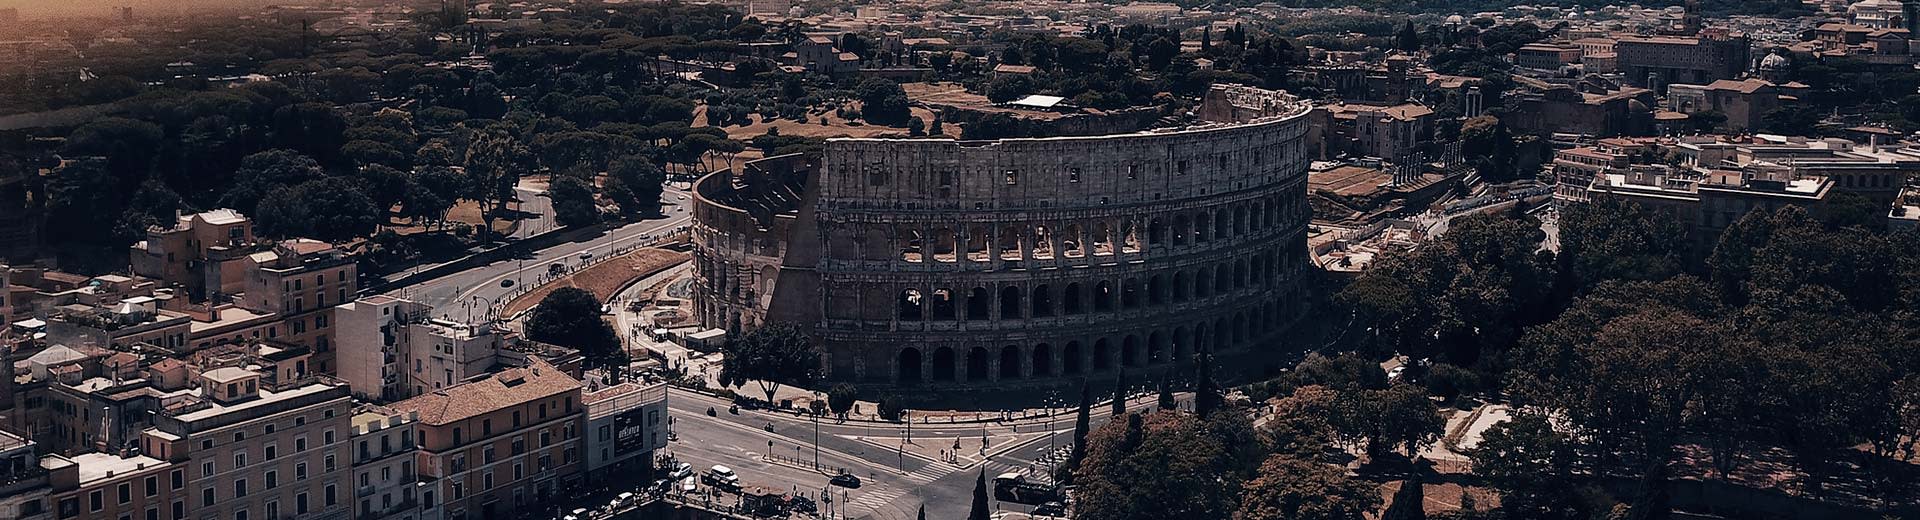 Dans la demi-lumière du crépuscule ou de l'aube, le célèbre Coliseum de Rome domine l'image, entourée de bâtiments.